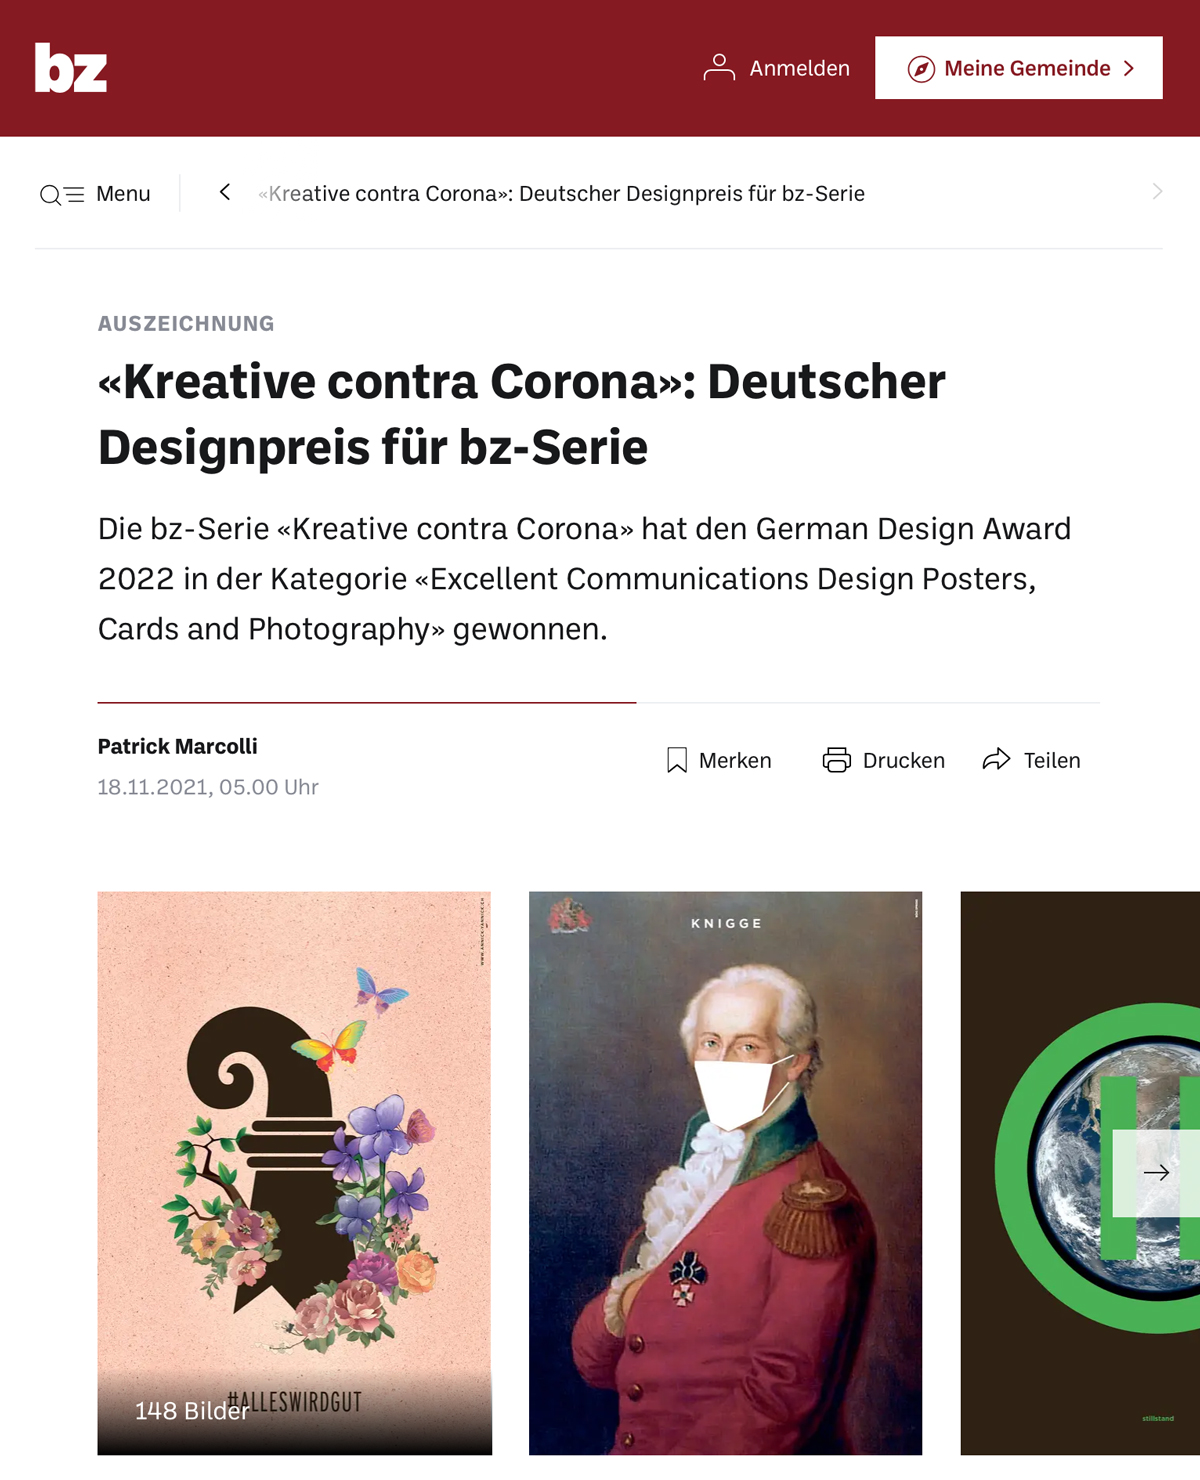 German Design Award. Creative contra Corona.